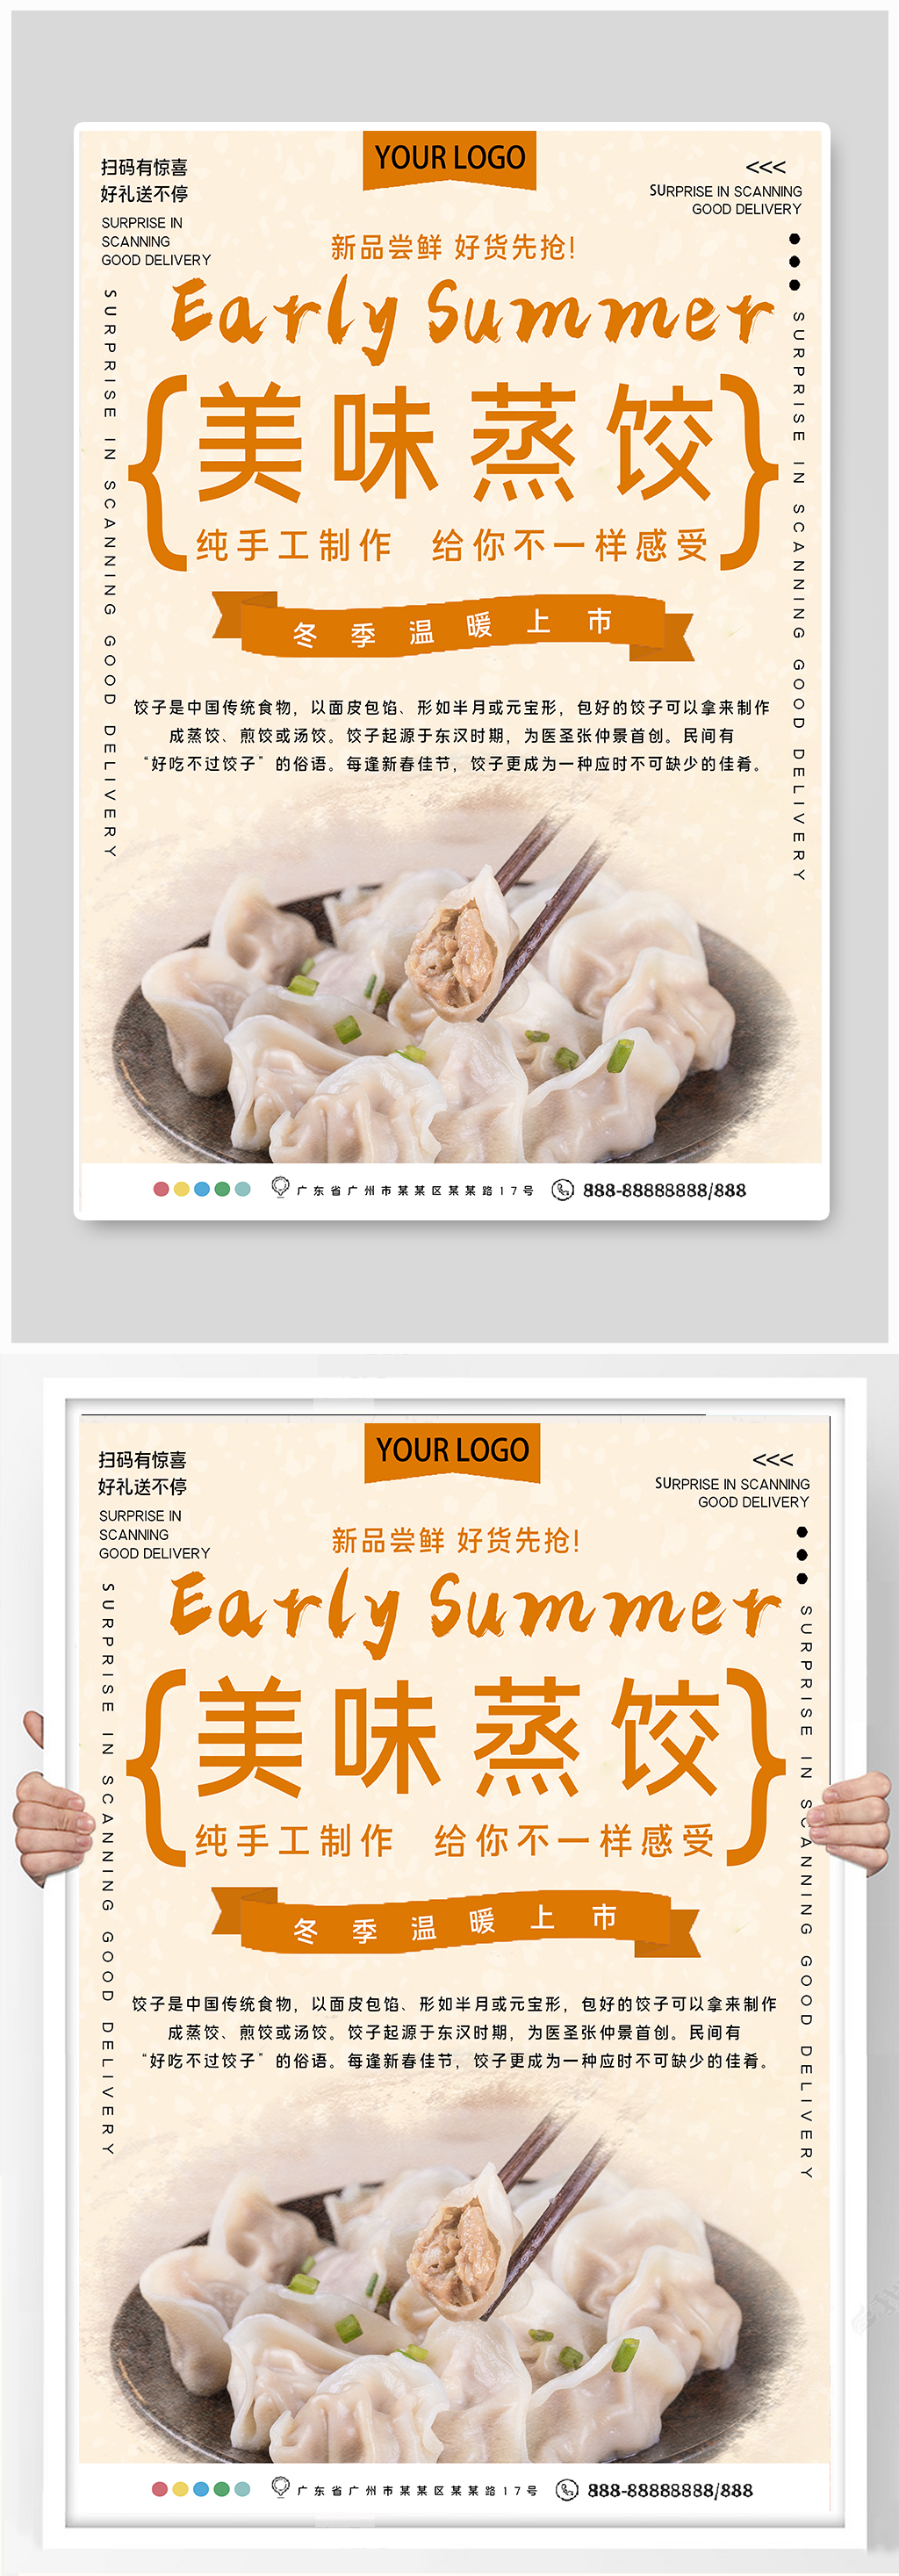 单价格表海报立即下载立即下载煎饺蒸饺饺子素材立即下载特色蒸饺宣传